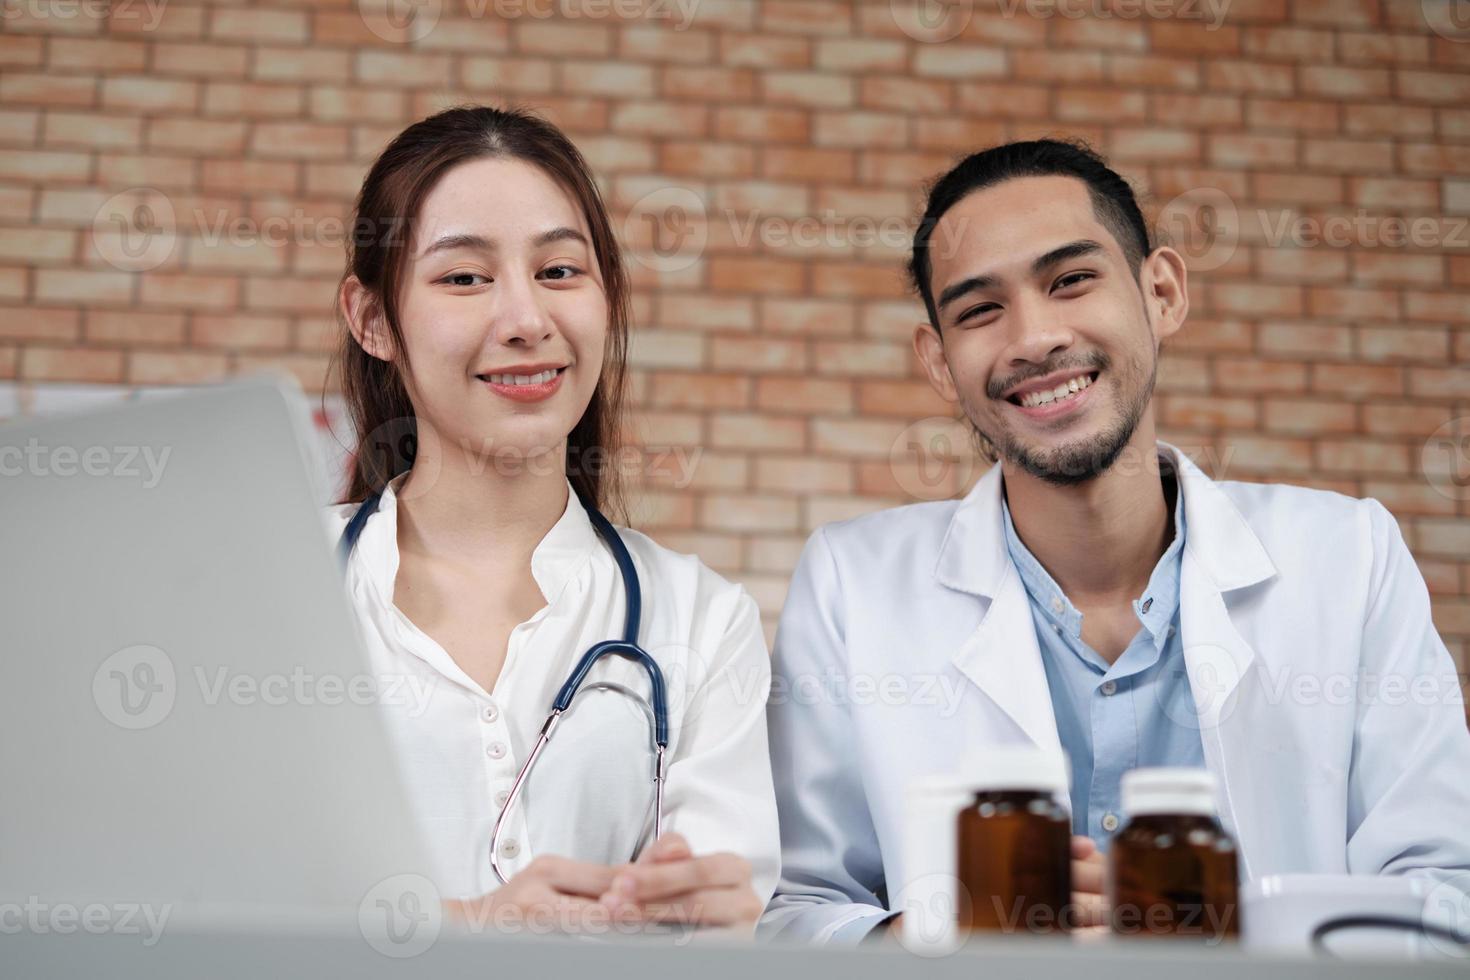 team di partner sanitari, ritratto di due giovani medici di etnia asiatica in camicie bianche con stetoscopio, sorridenti e guardando la telecamera in clinica, persone esperte nel trattamento professionale. foto